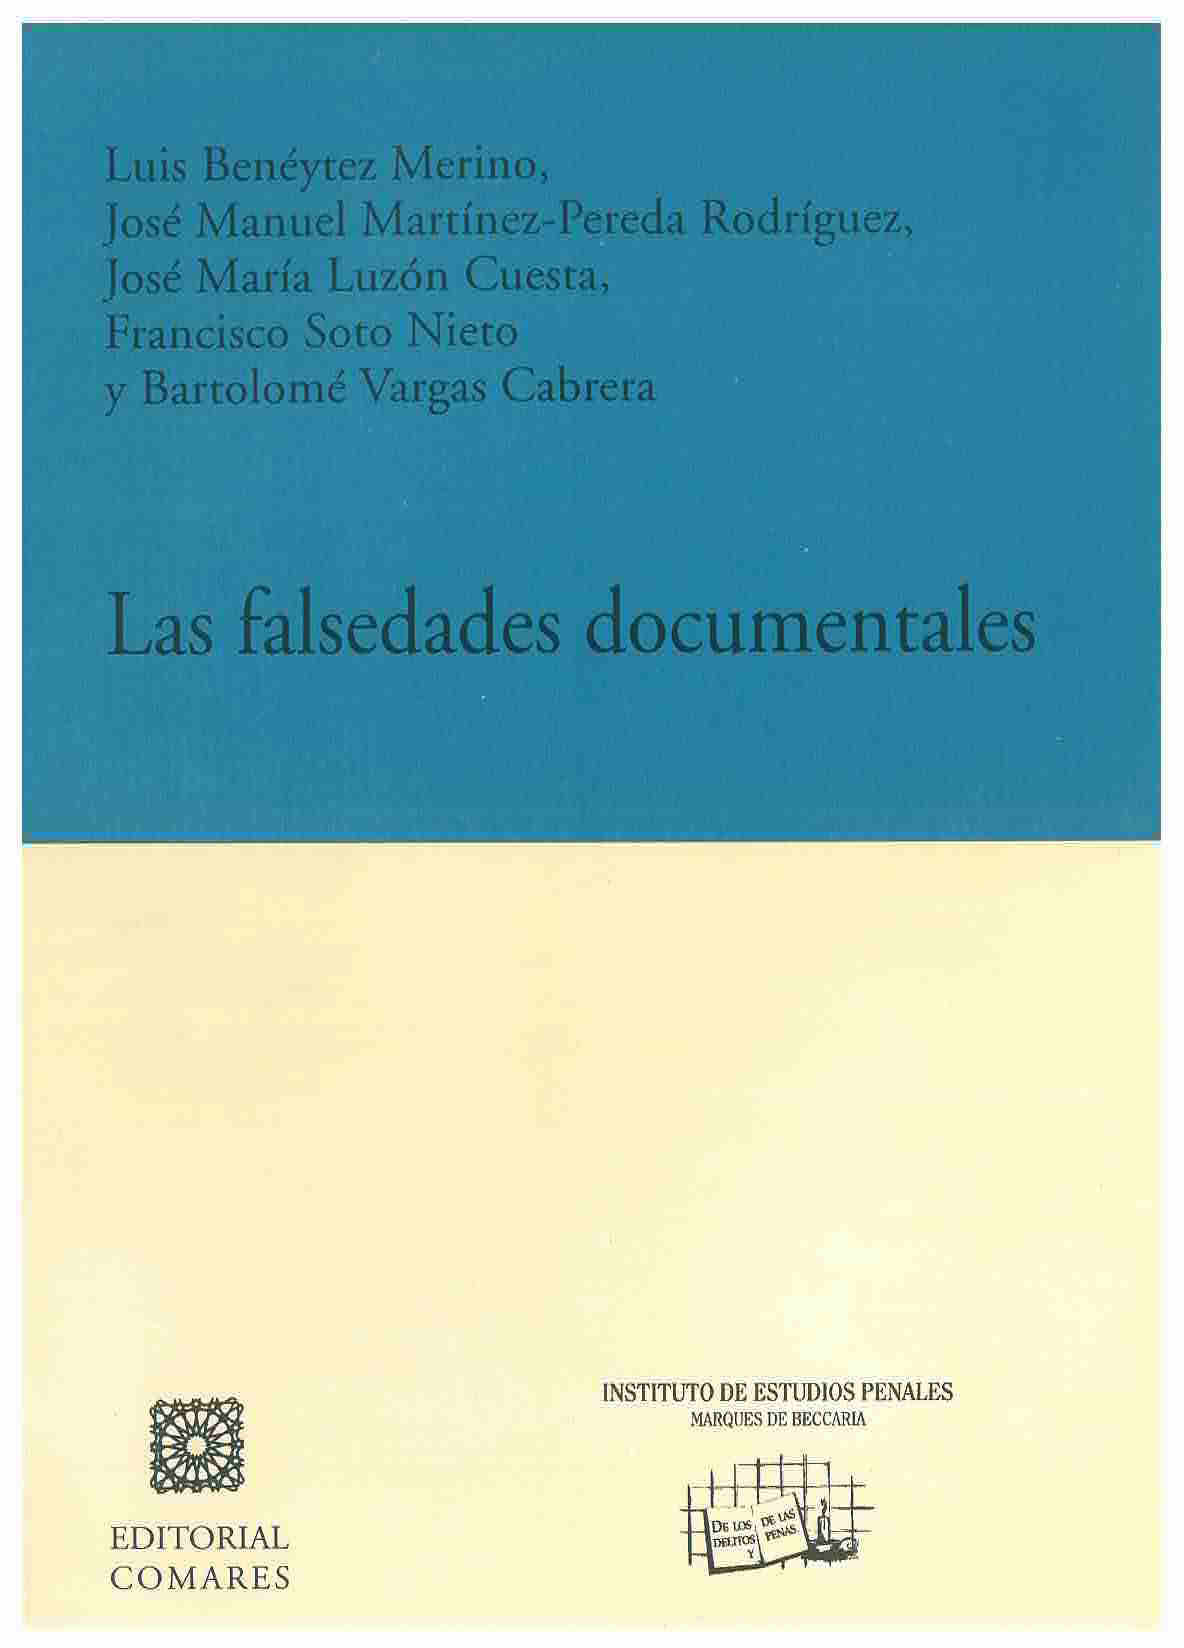 Las falsedades documentales: libro homenaje a Enrique Ruiz Badillo